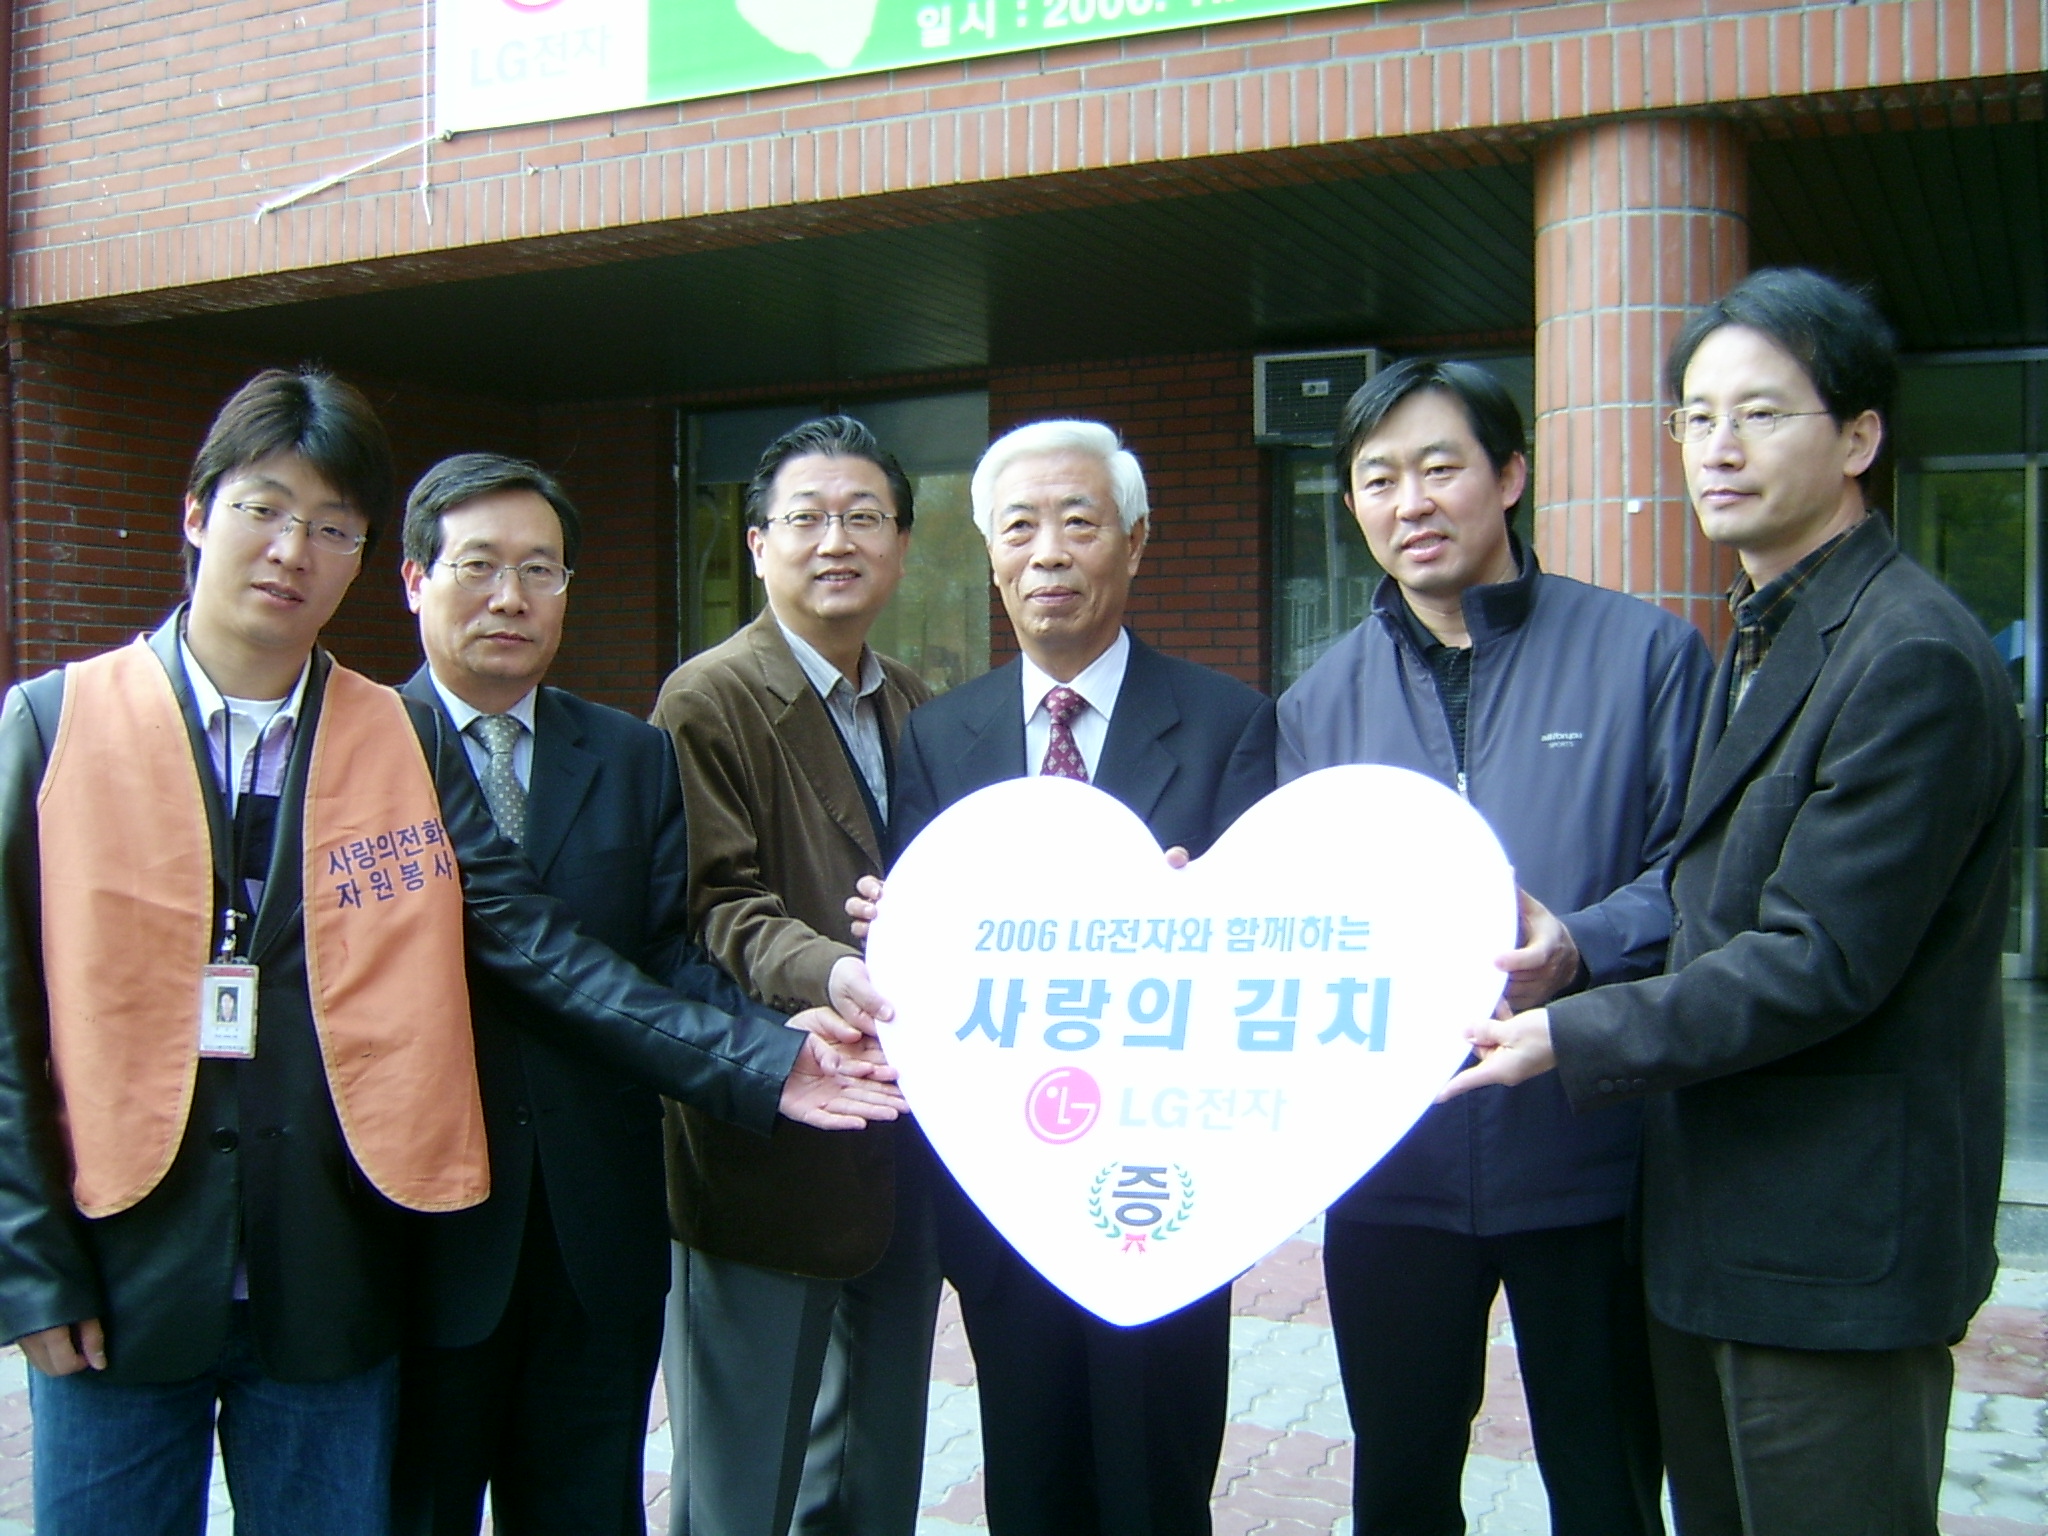 LG전자와 함께하는 사랑의 김장나누기 기념사진